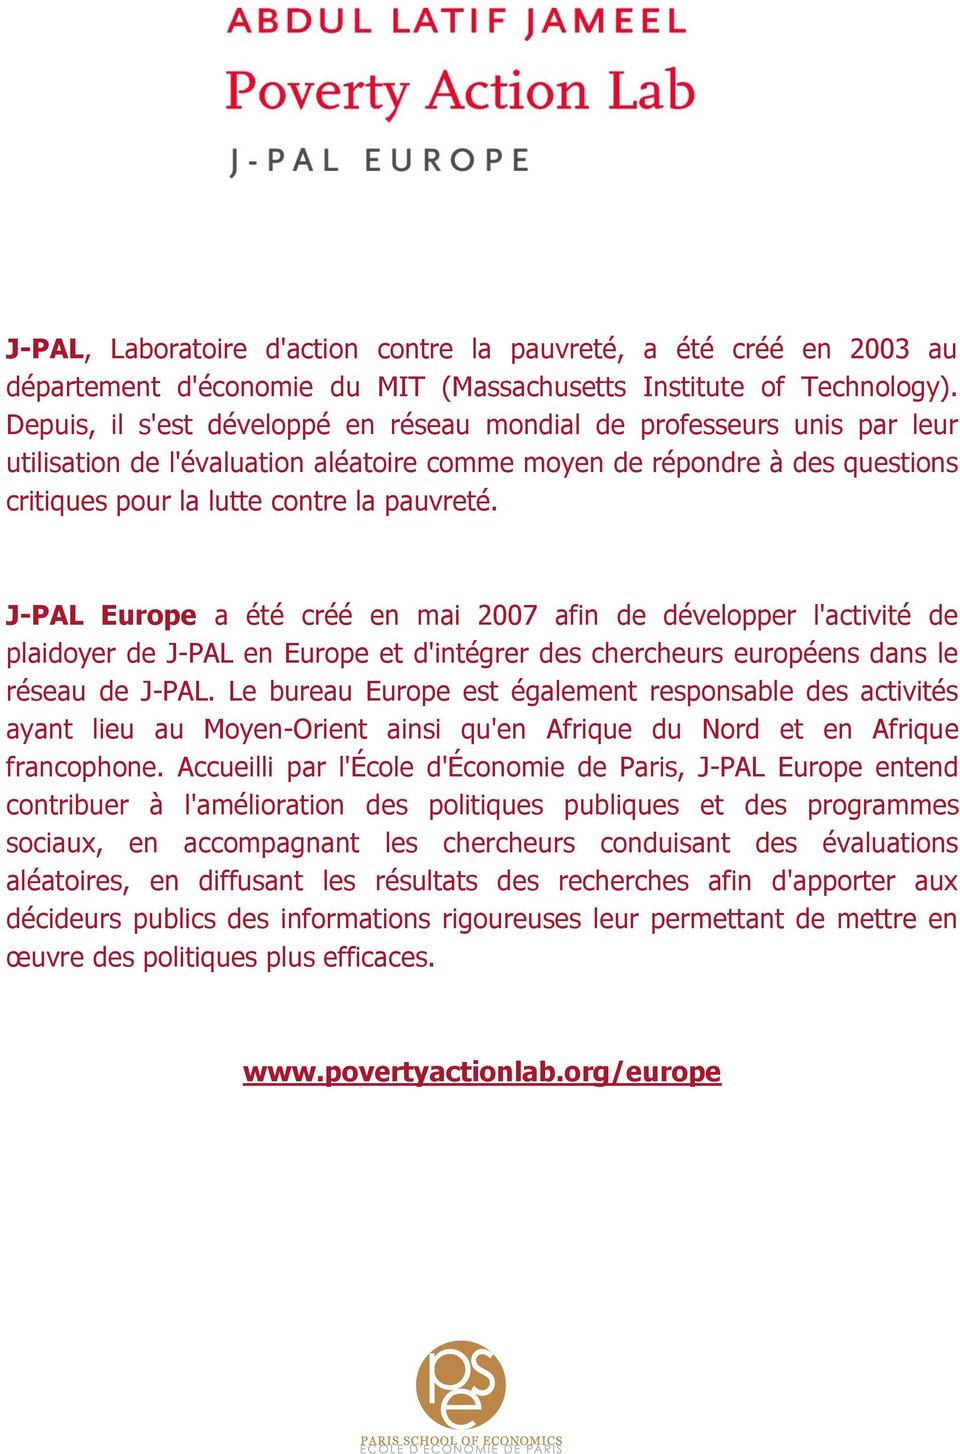 J-PAL Europe a été créé en mai 2007 afin de développer l'activité de plaidoyer de J-PAL en Europe et d'intégrer des chercheurs européens dans le réseau de J-PAL.